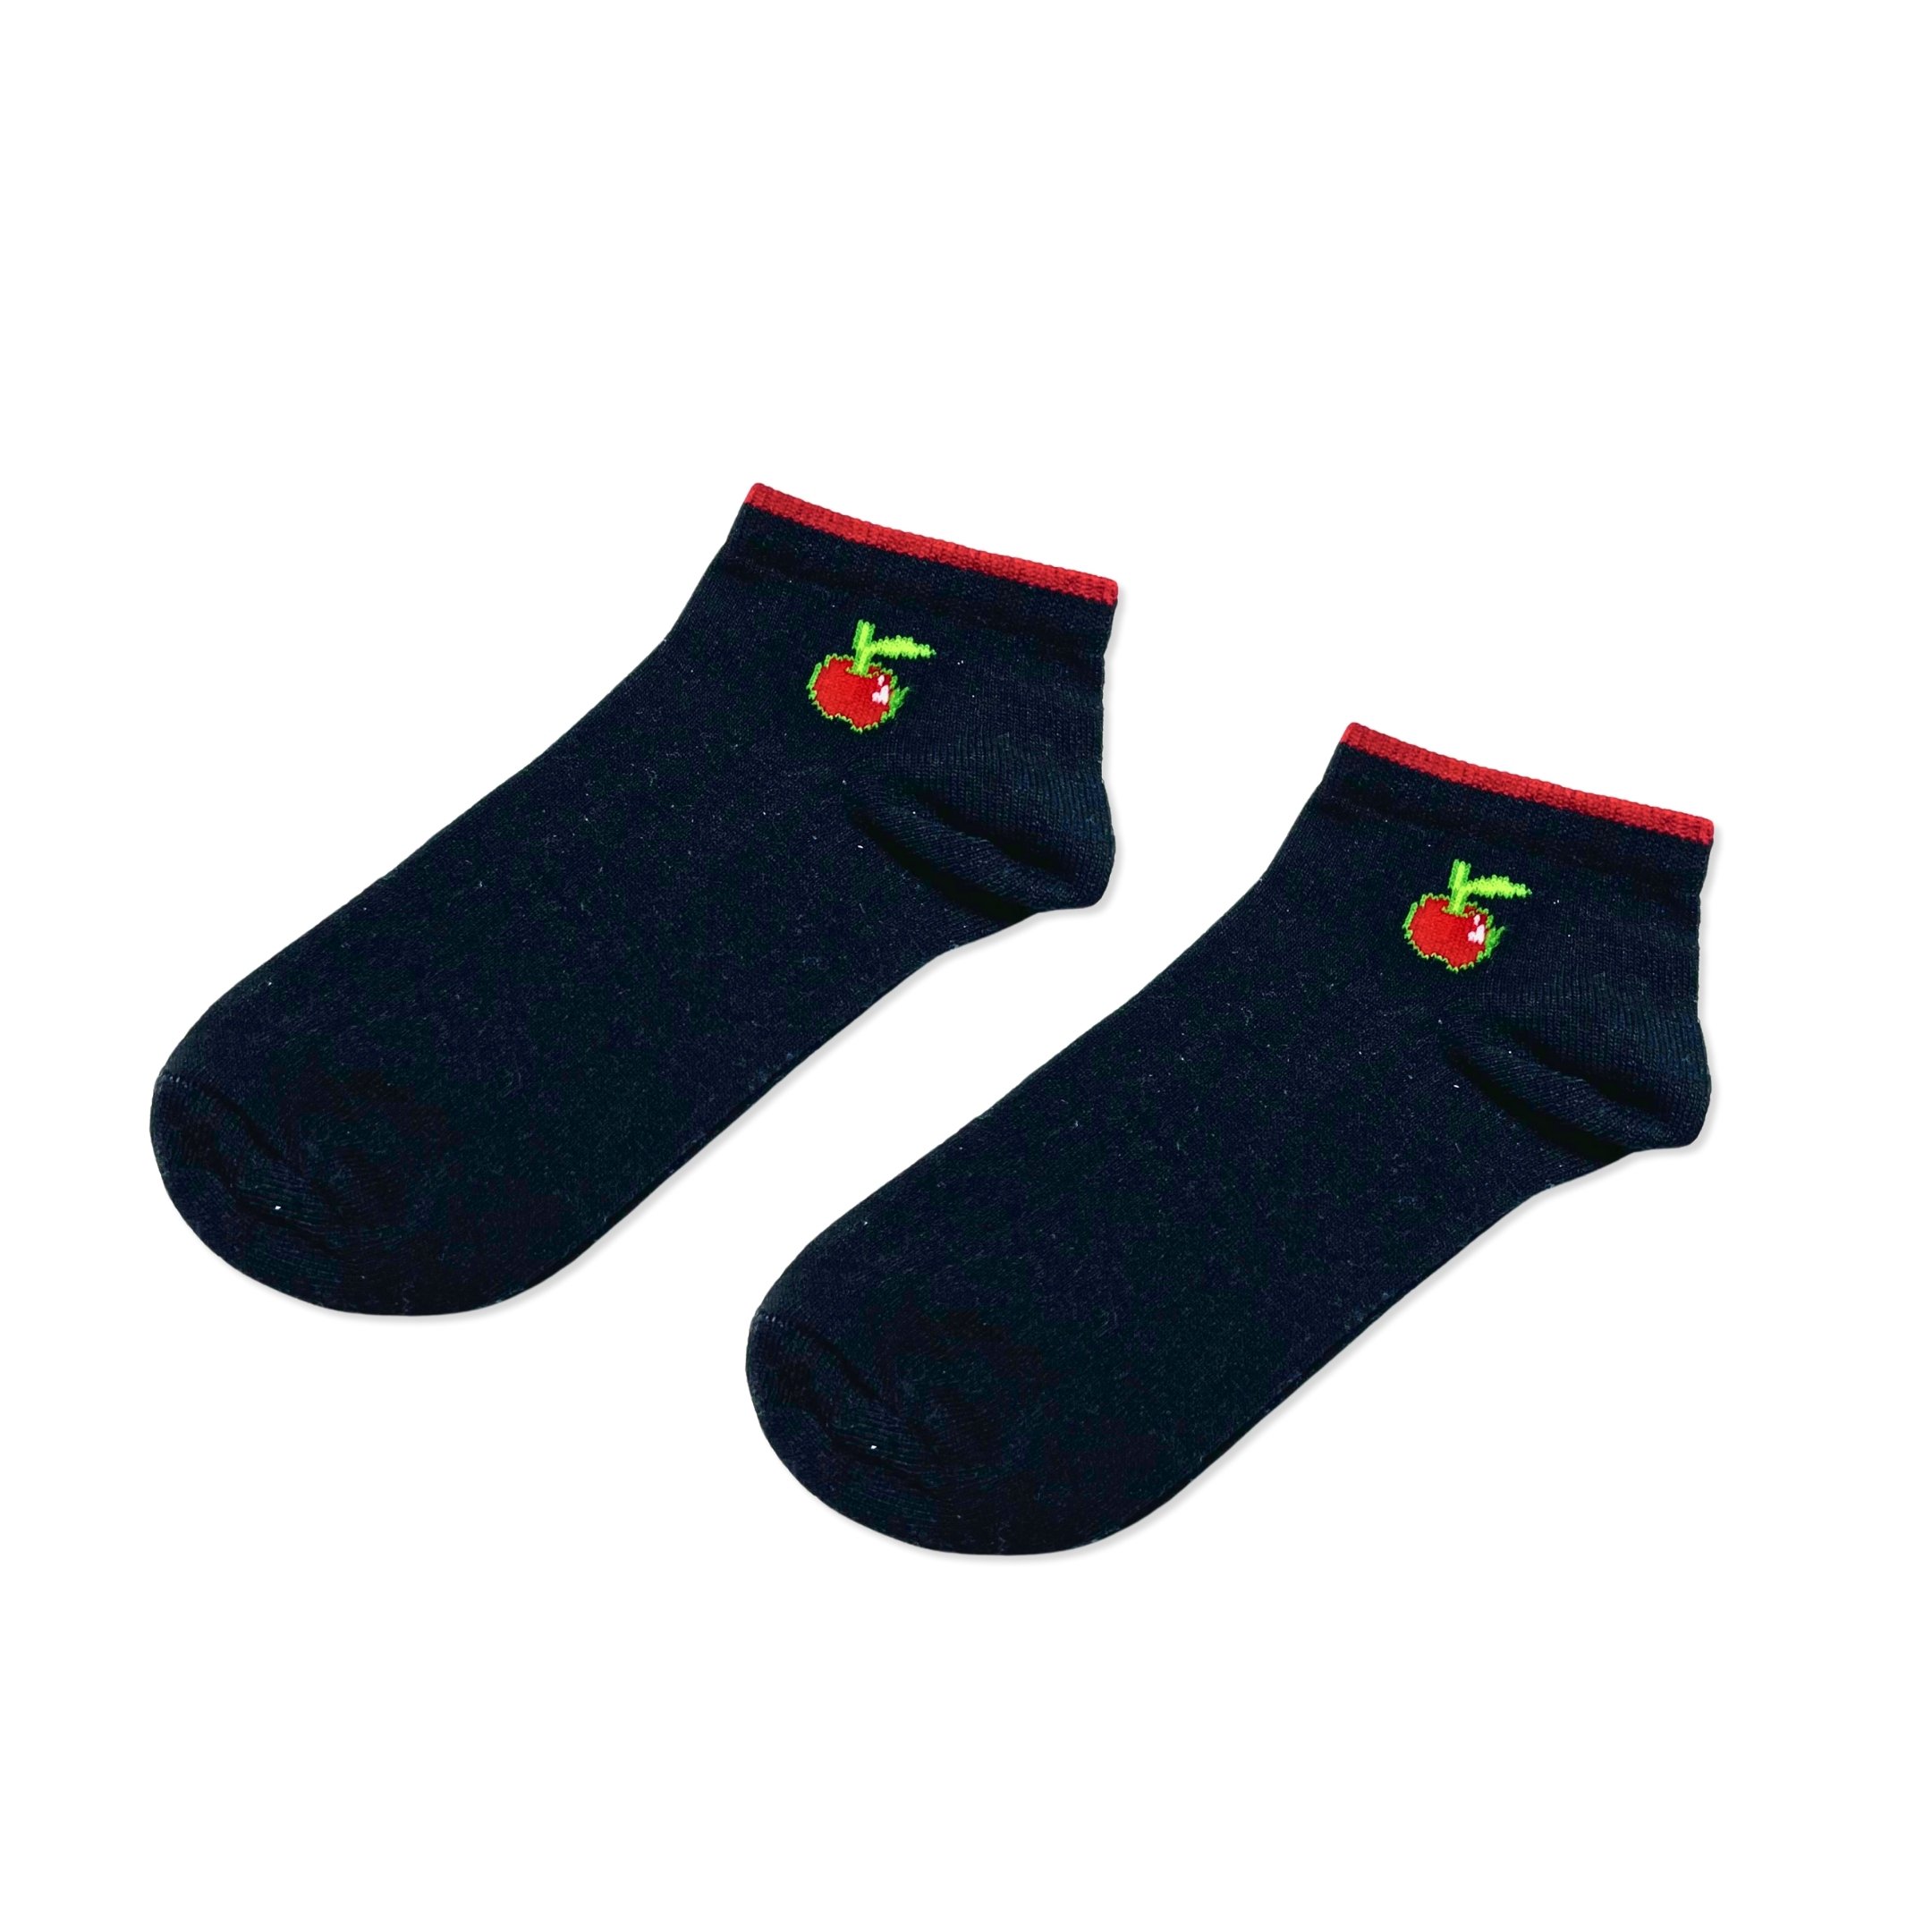 Düz Siyah Renkli Kiraz Şekilli Patik Çorap